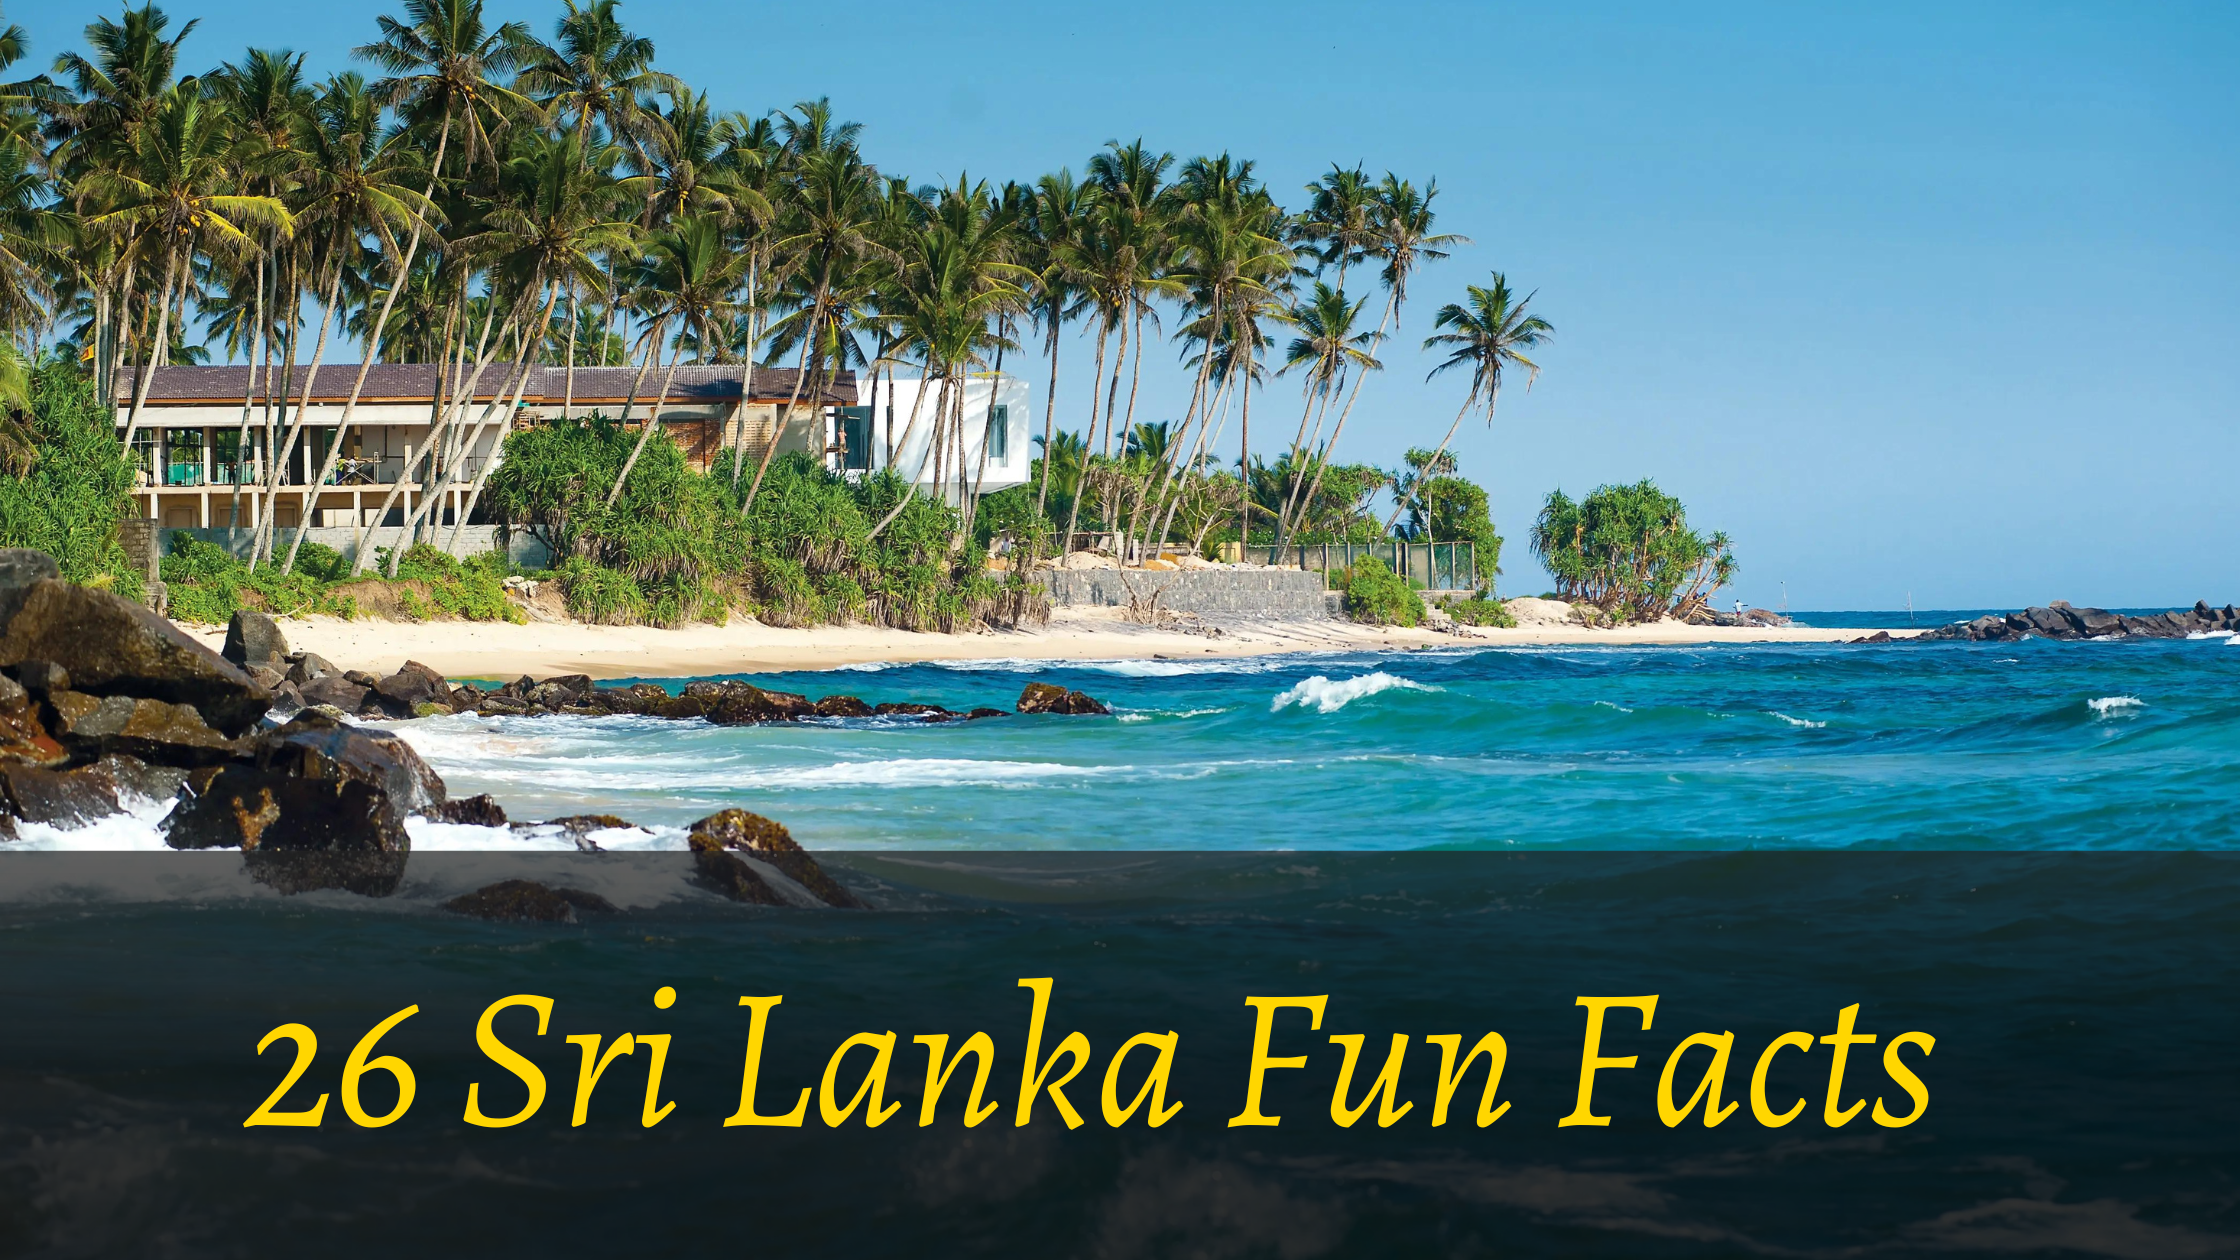 Sri lanka fun facts